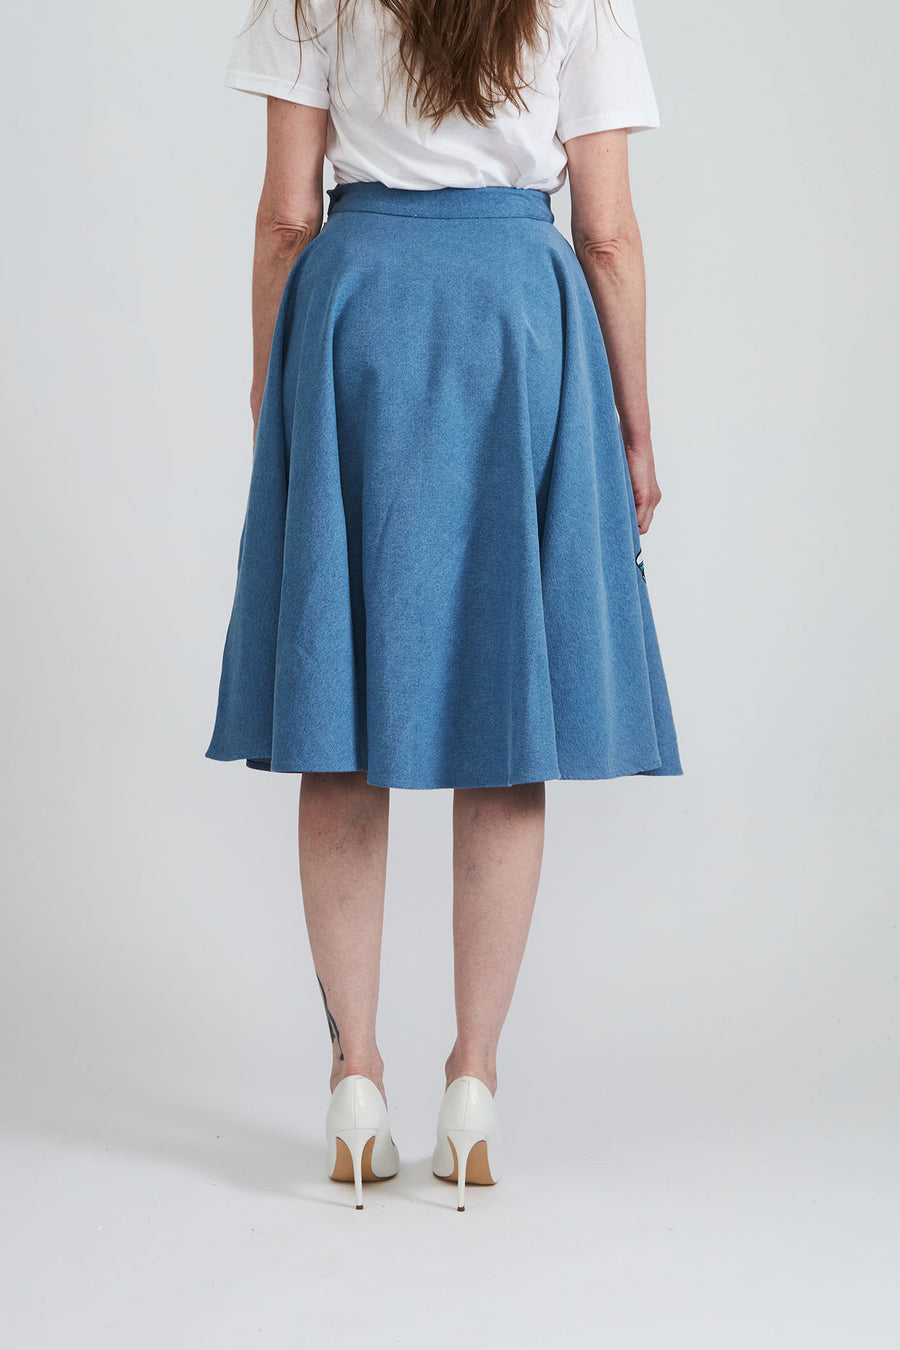 BATSHEVA - Car Skirt in Blue Denim